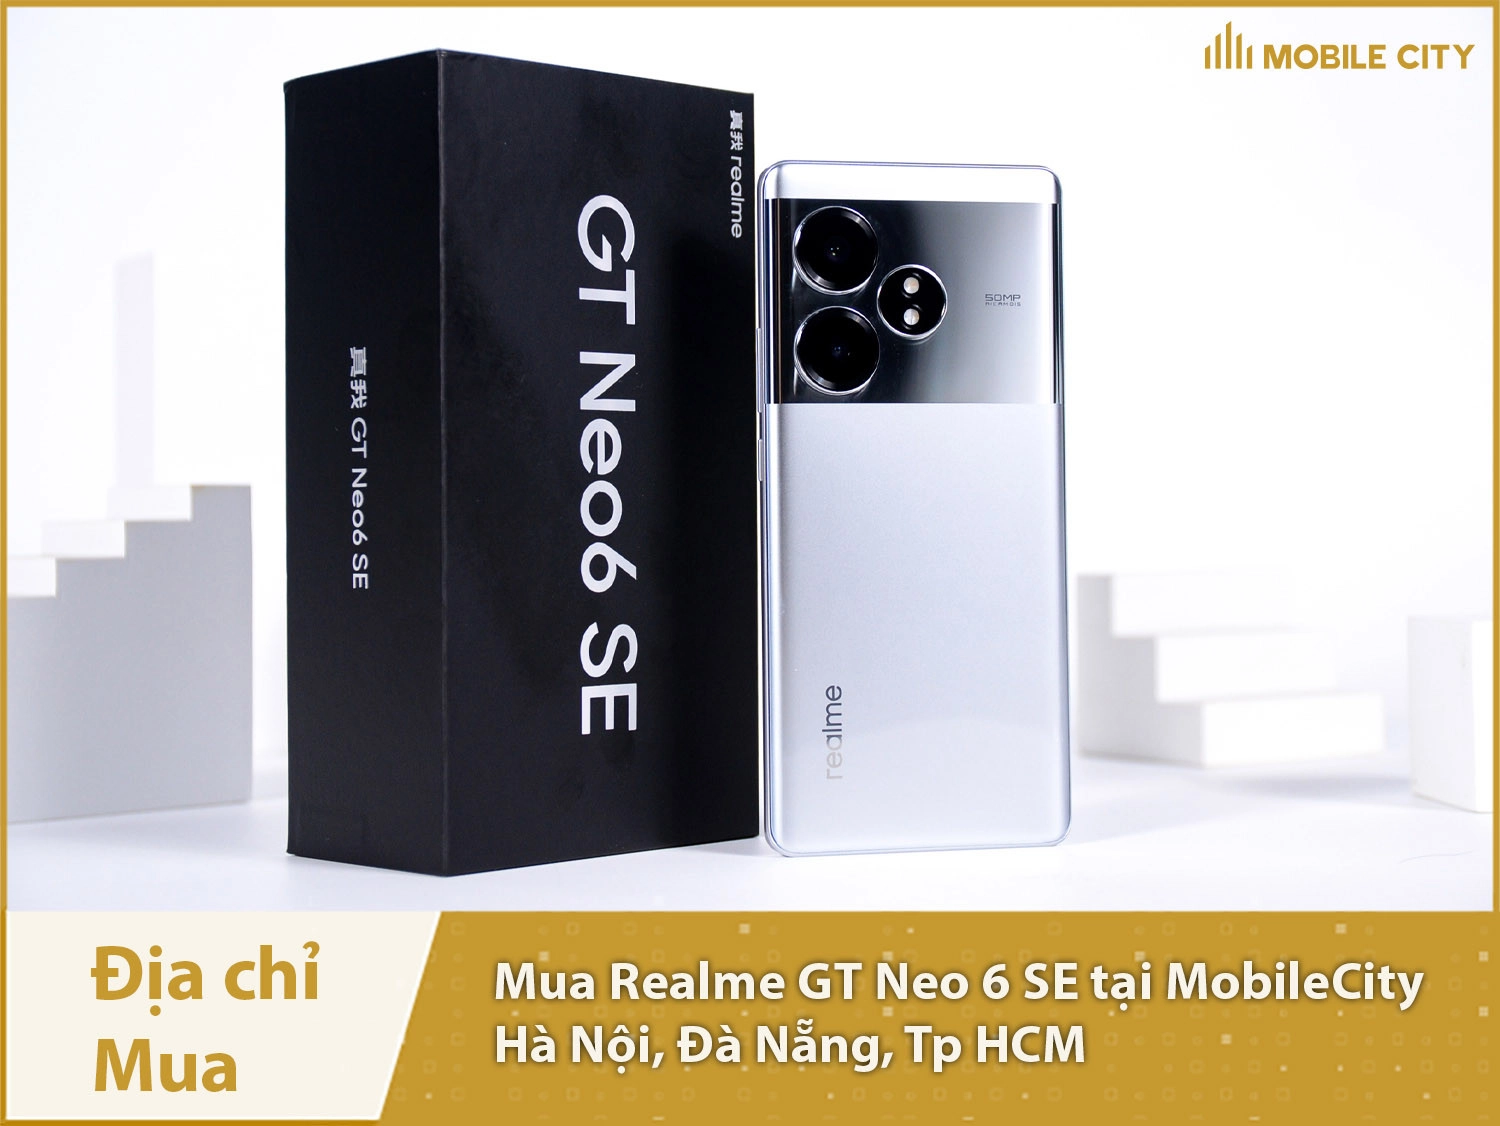 Mua Realme GT Neo 6 SE tại Hà Nội, Đà Nẵng, Tp HCM